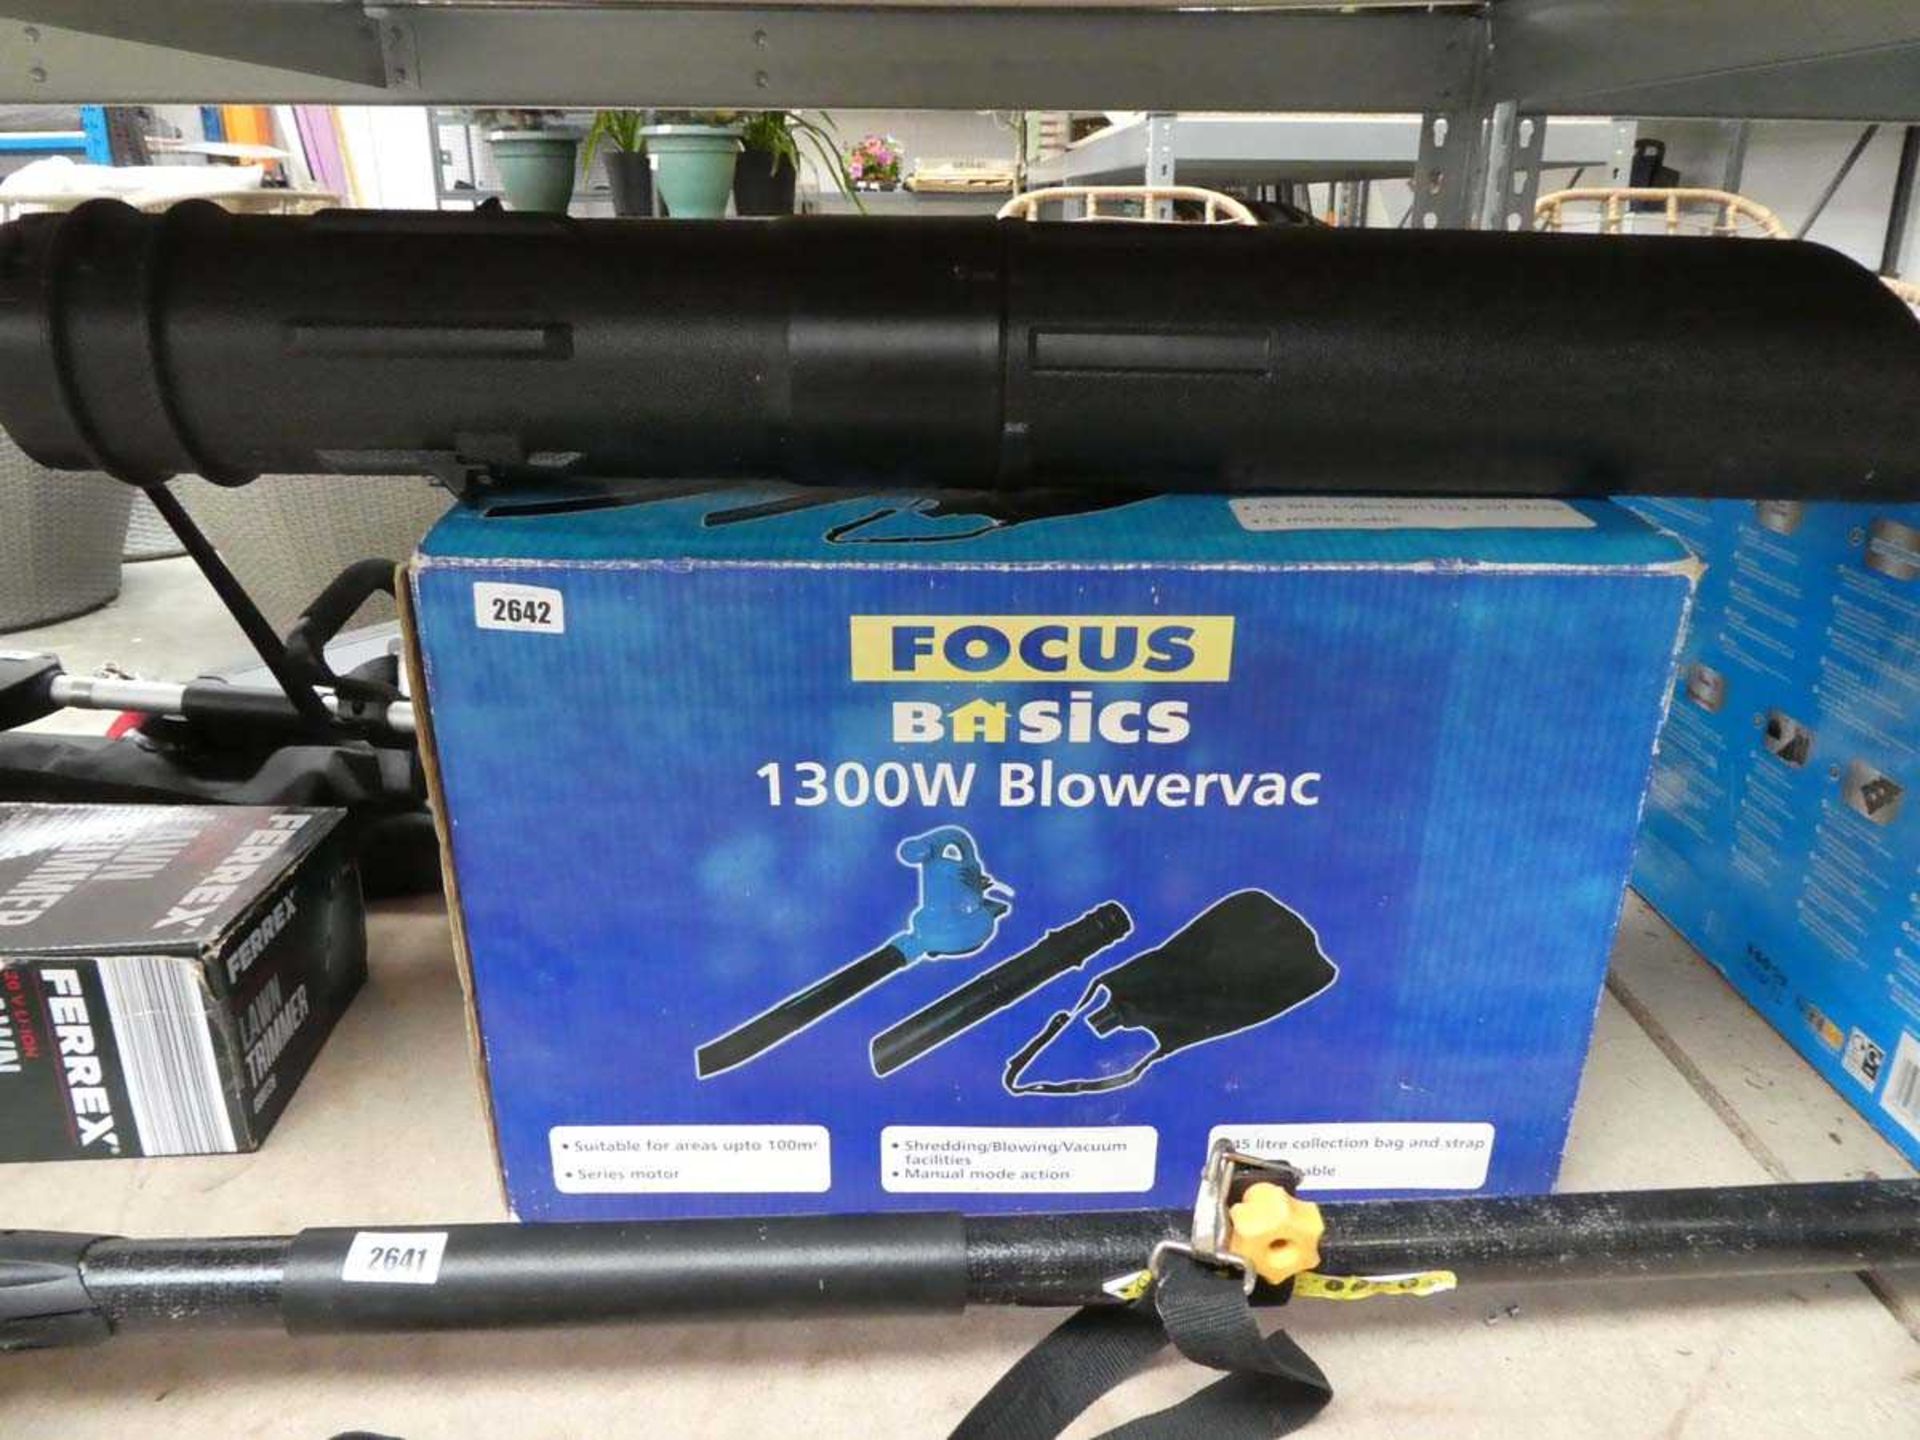 Boxed Focus Basics electric blower vacuum